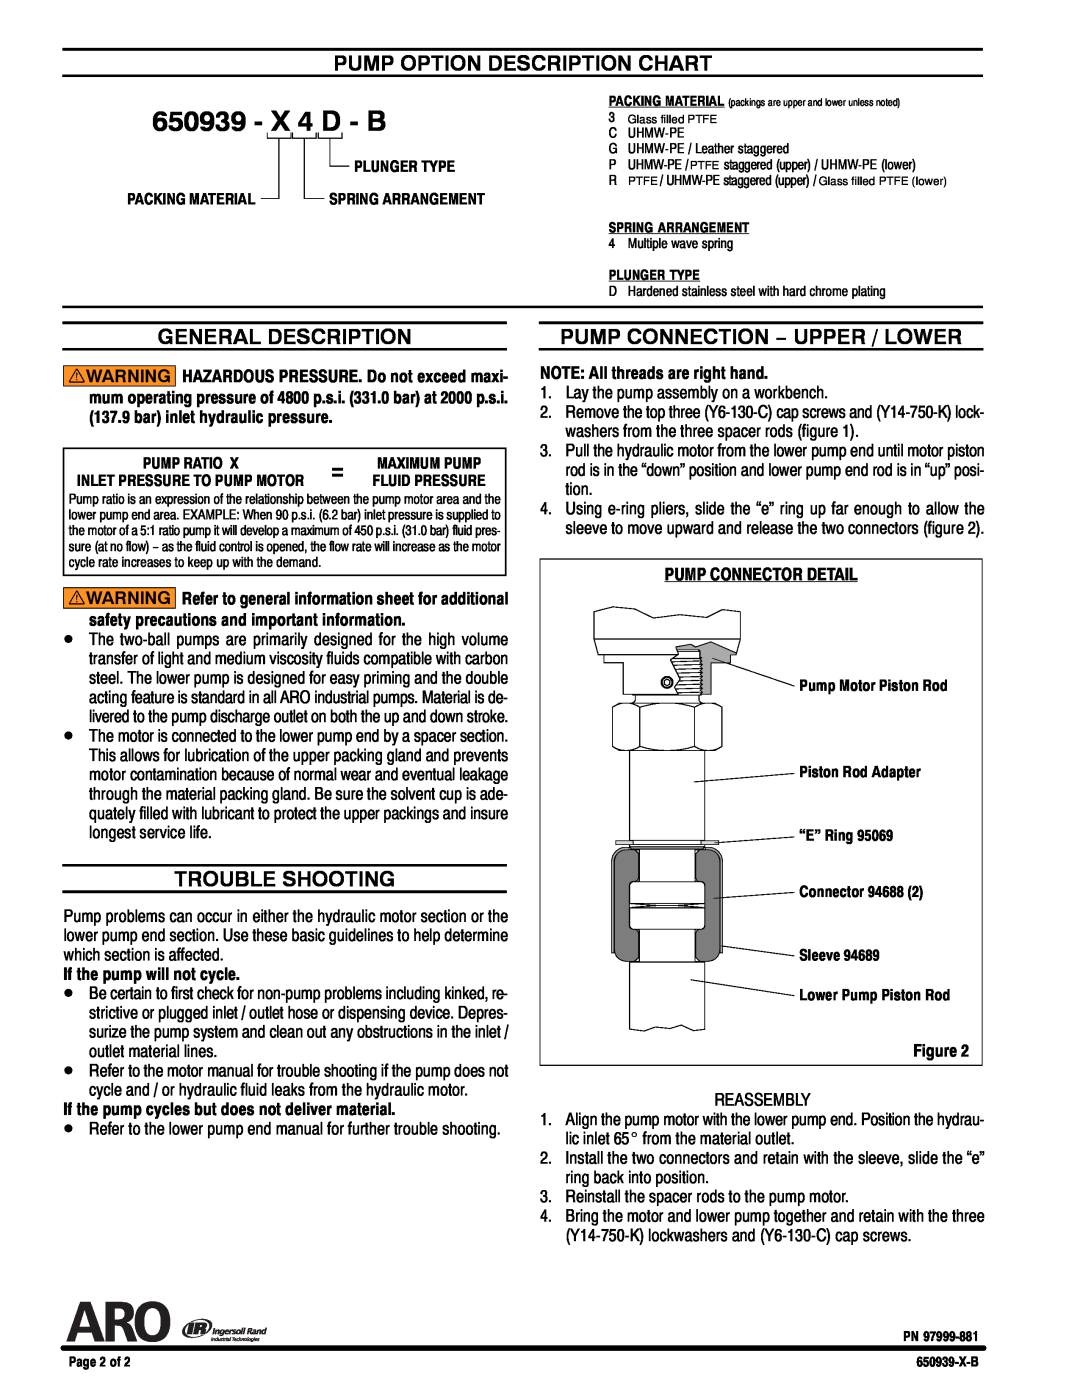 Ingersoll-Rand 650939-X4D-B specifications Pump Option Description Chart, General Description, Trouble Shooting, X 4 D - B 